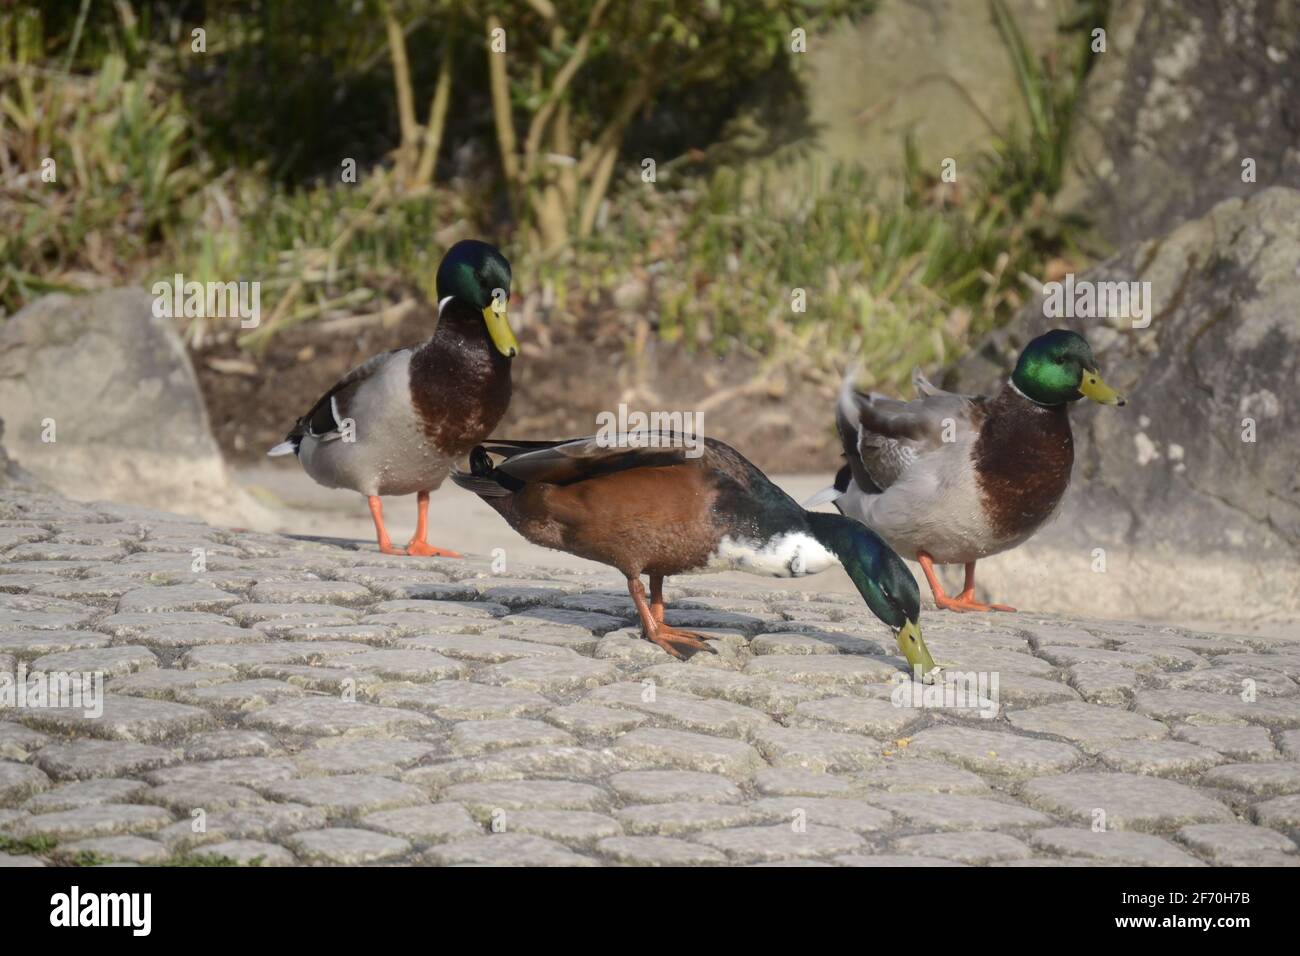 Die Ente hat farbige Federn und ist am Bürgersteig Stock Photo